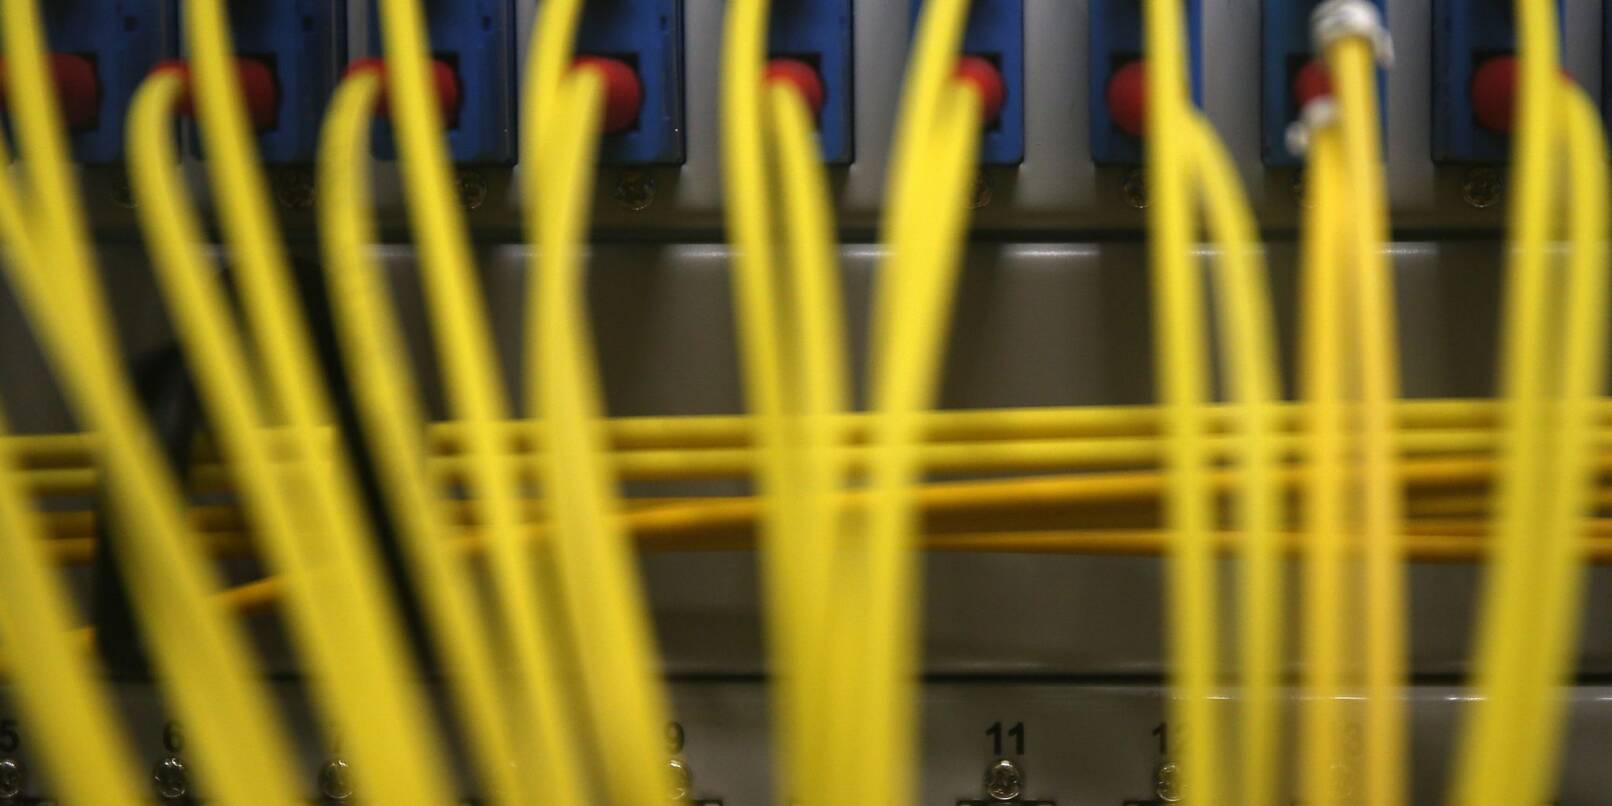 Auch wenn die Breitbandverbindung in Deutschland häufiger stockt, ist die Nachfrage nach superschnellen Gigabit-Verbindungen verhalten.